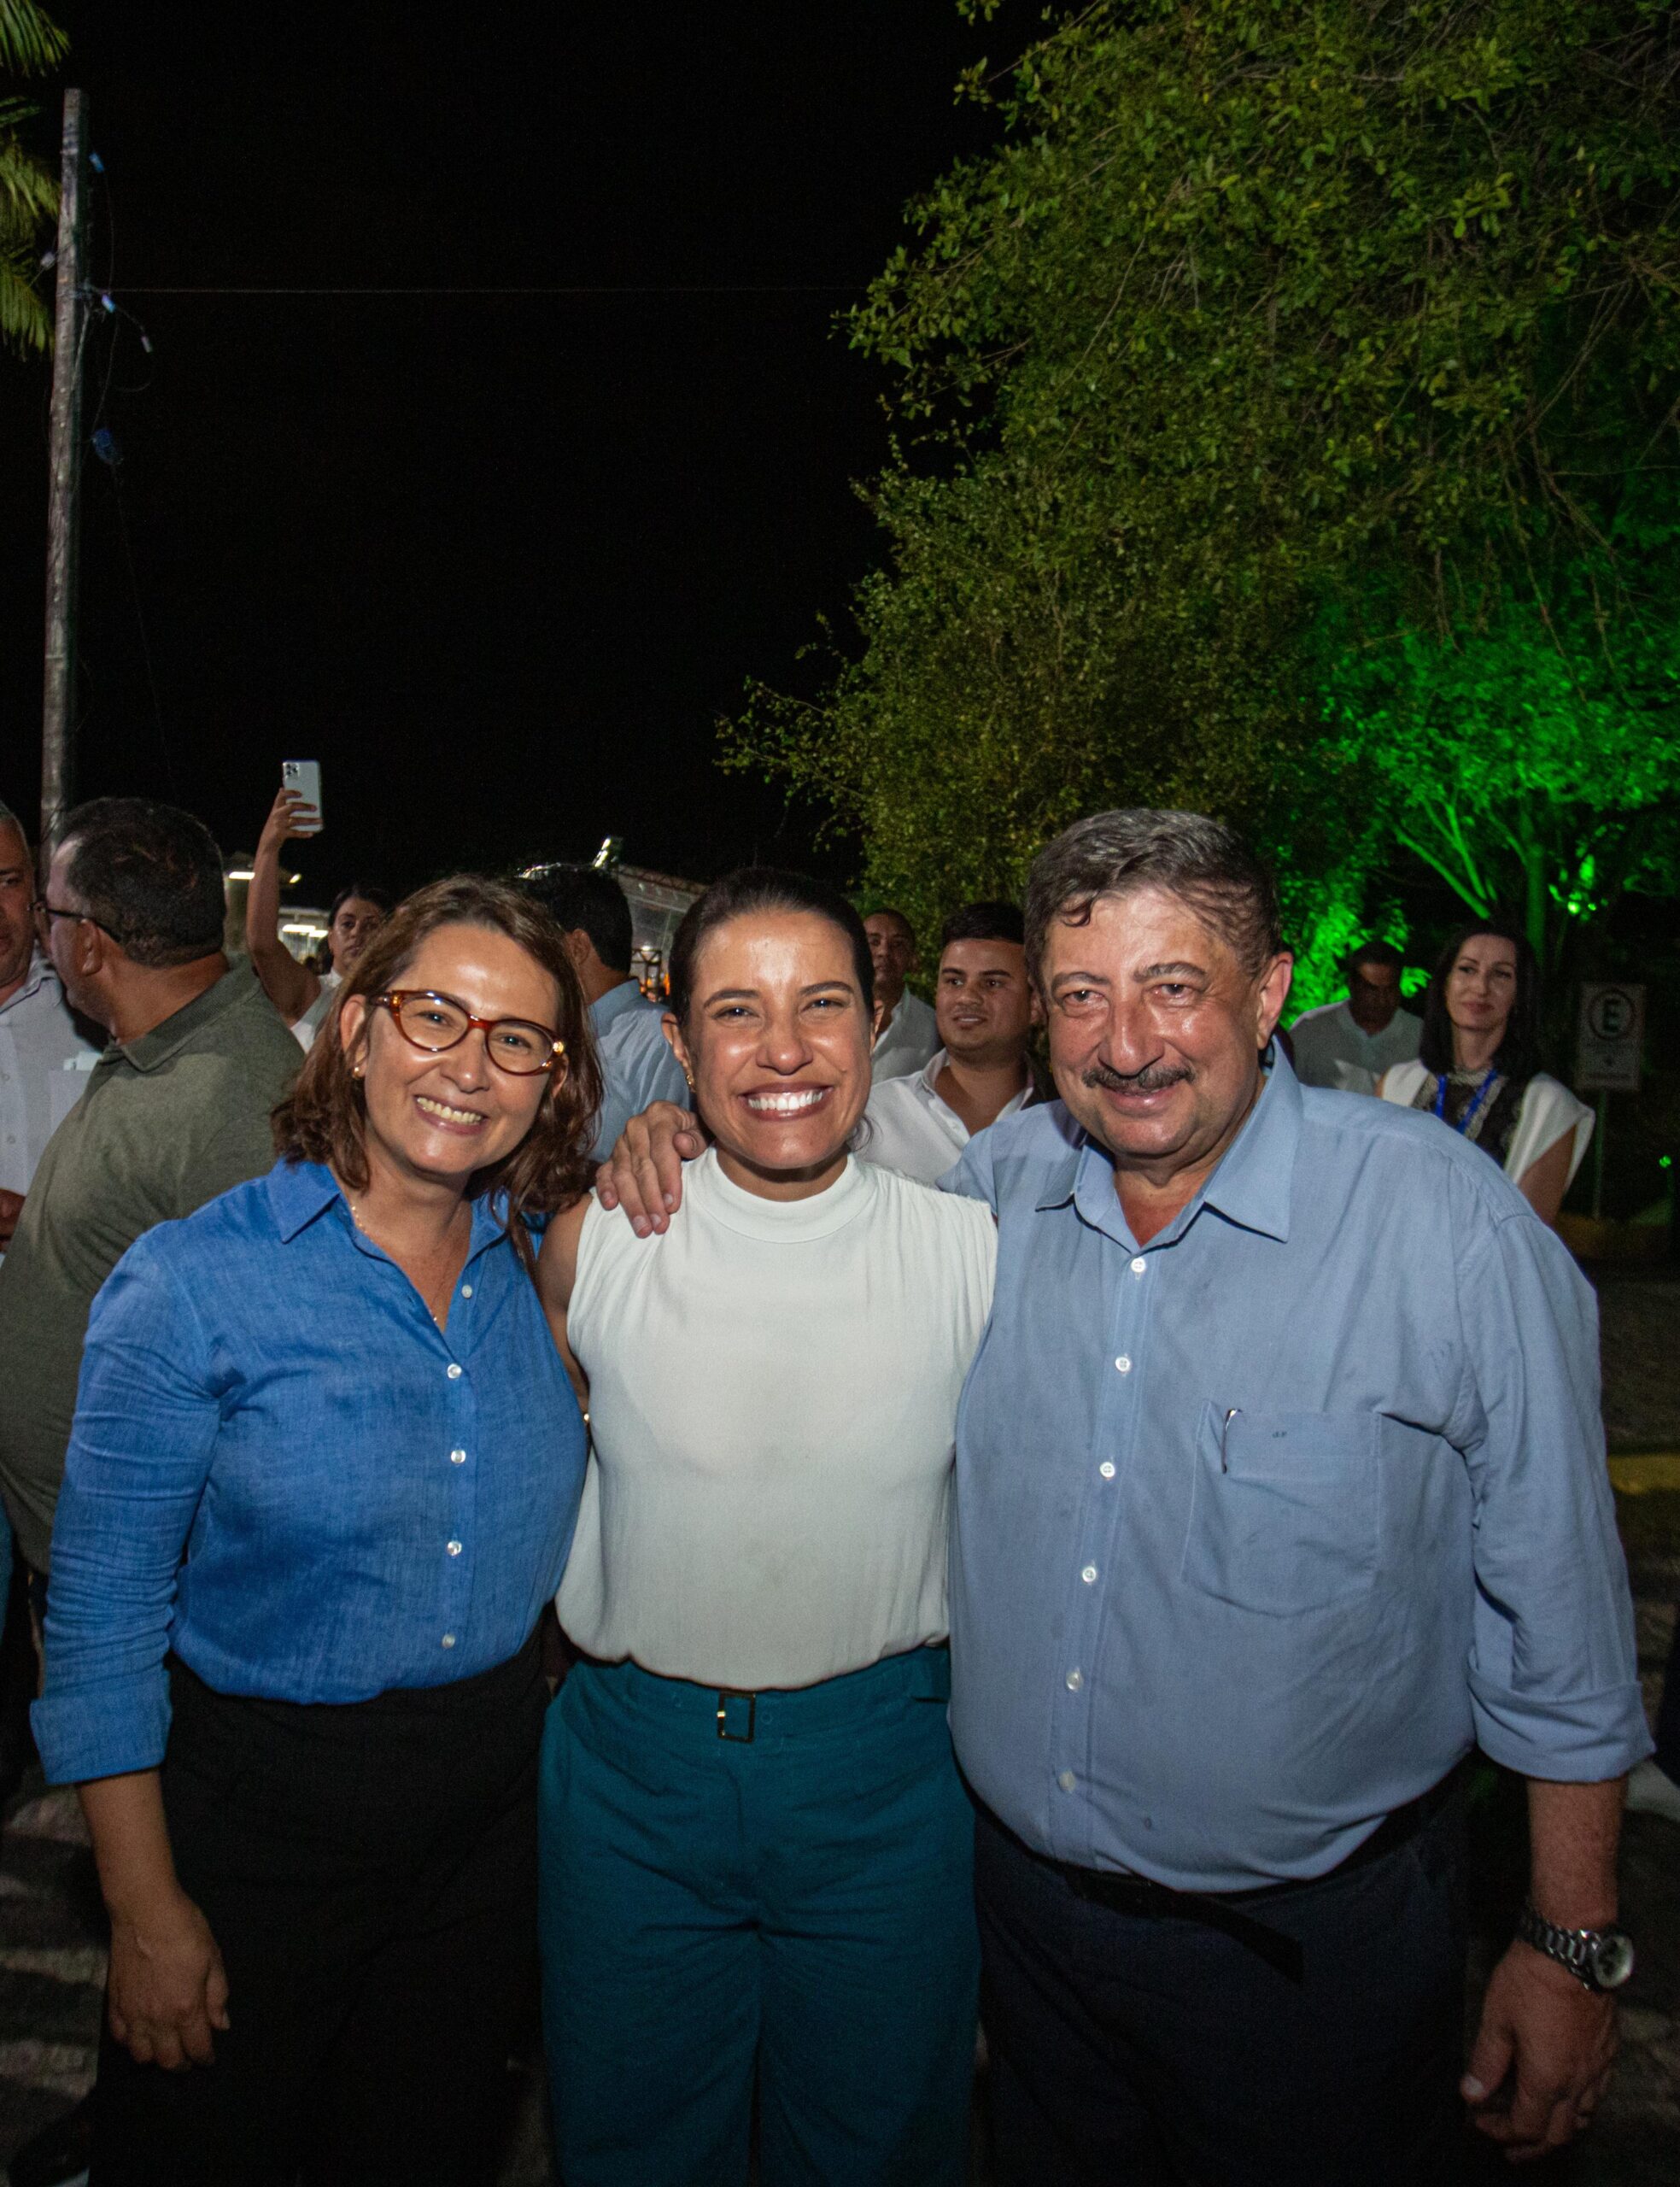 ‘Deputada do Agro’ Débora Almeida participa e celebra Feira de Produtos da Agricultura que acontece no Recife